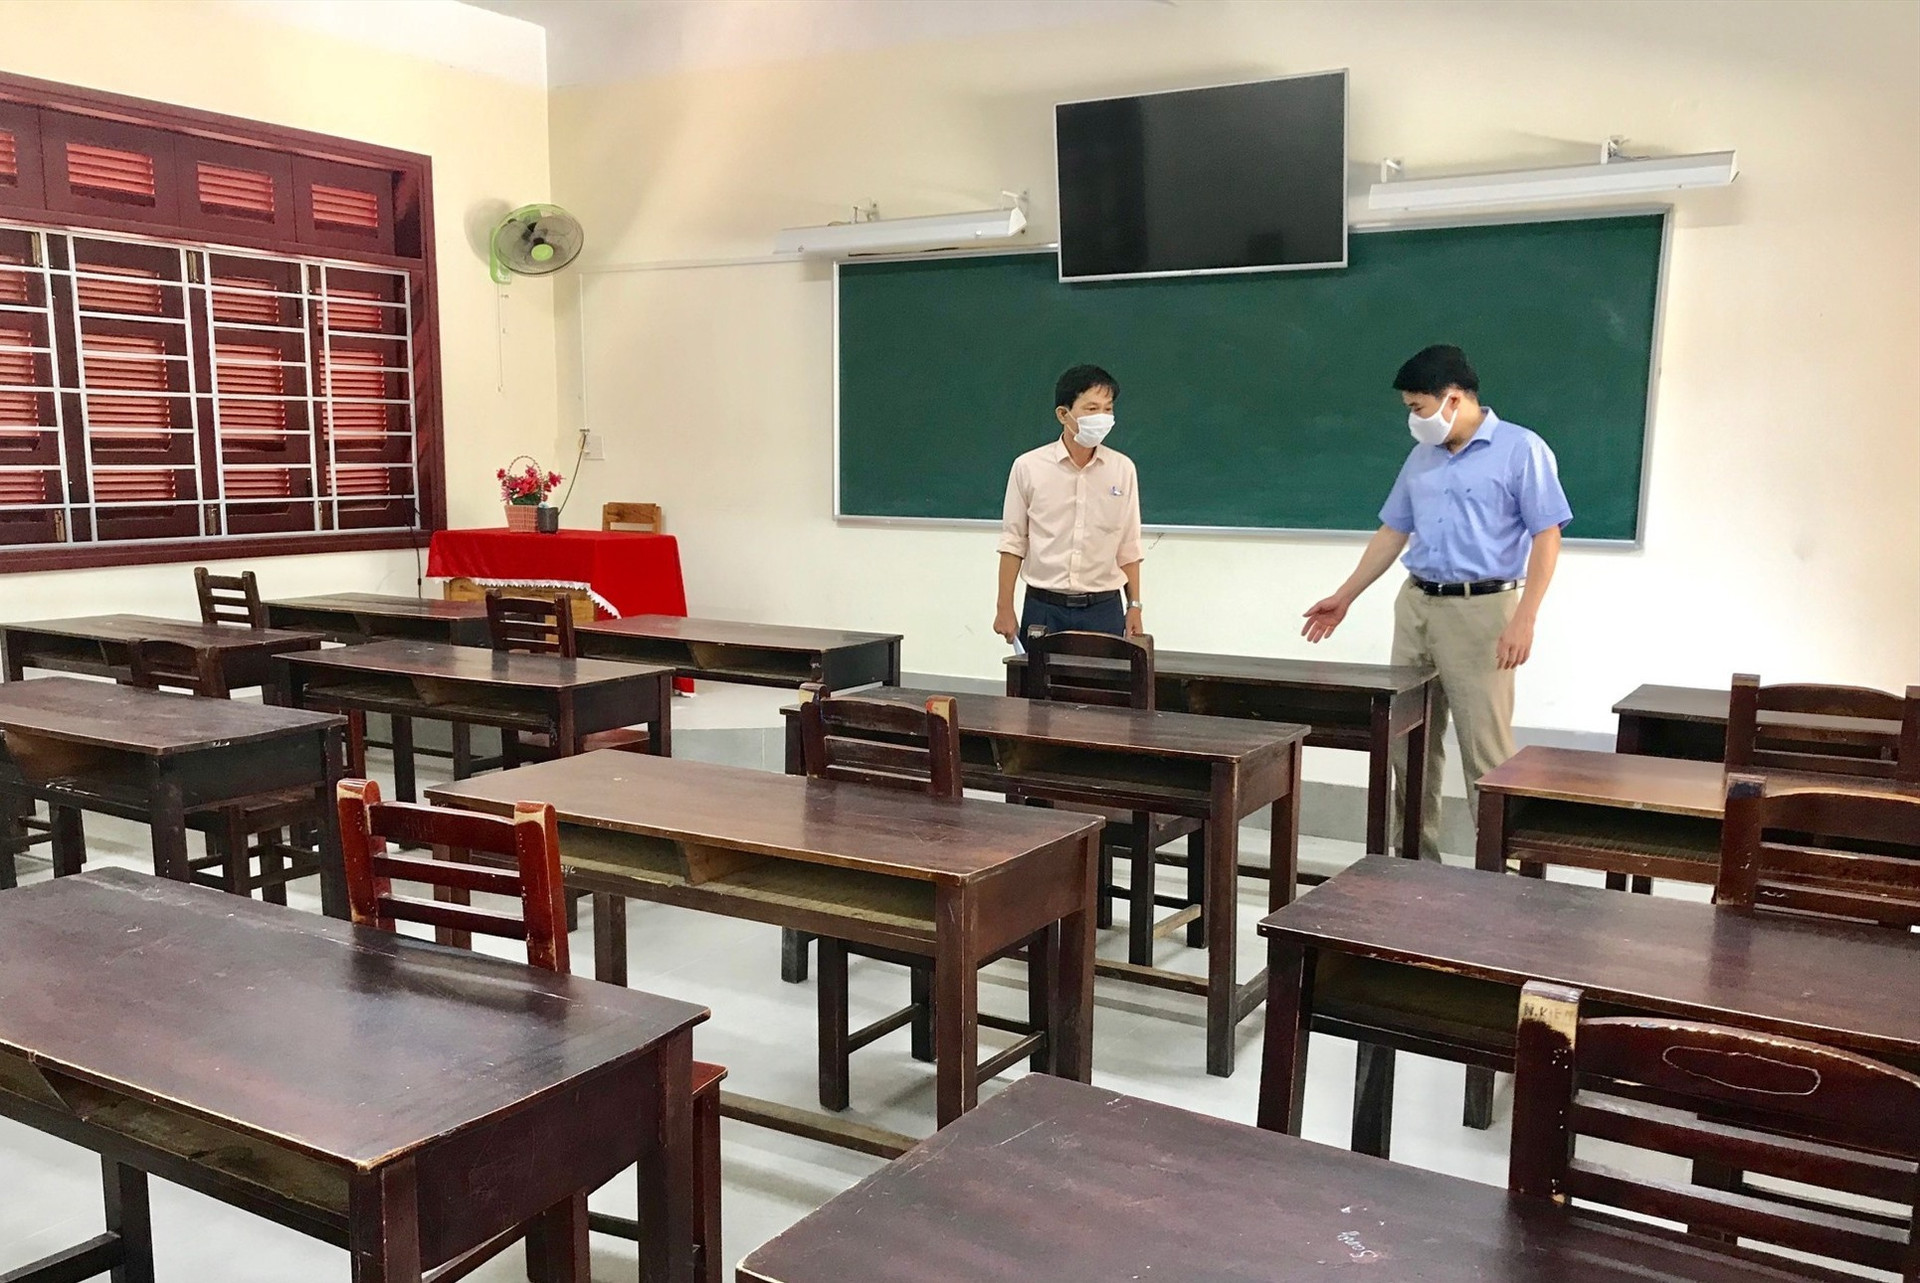 Phó Chủ tịch UBND tỉnh Trần Văn Tân khảo sát một phòng thi tại trường THPT Trần Quý Cáp. Ảnh: Q.T